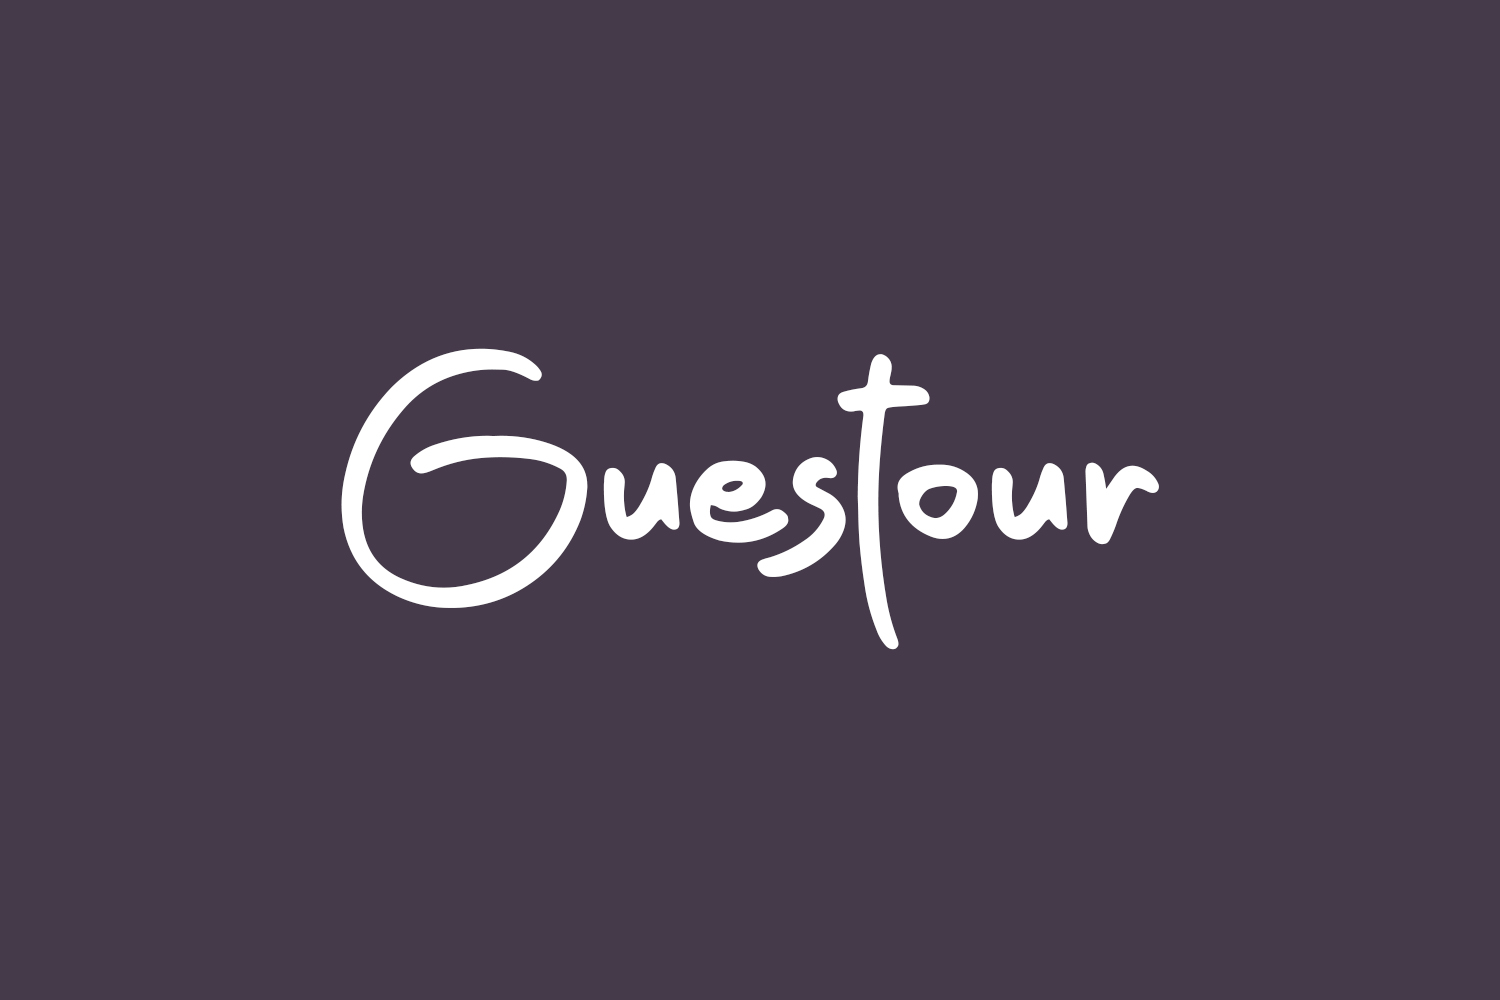 Guestour Free Font